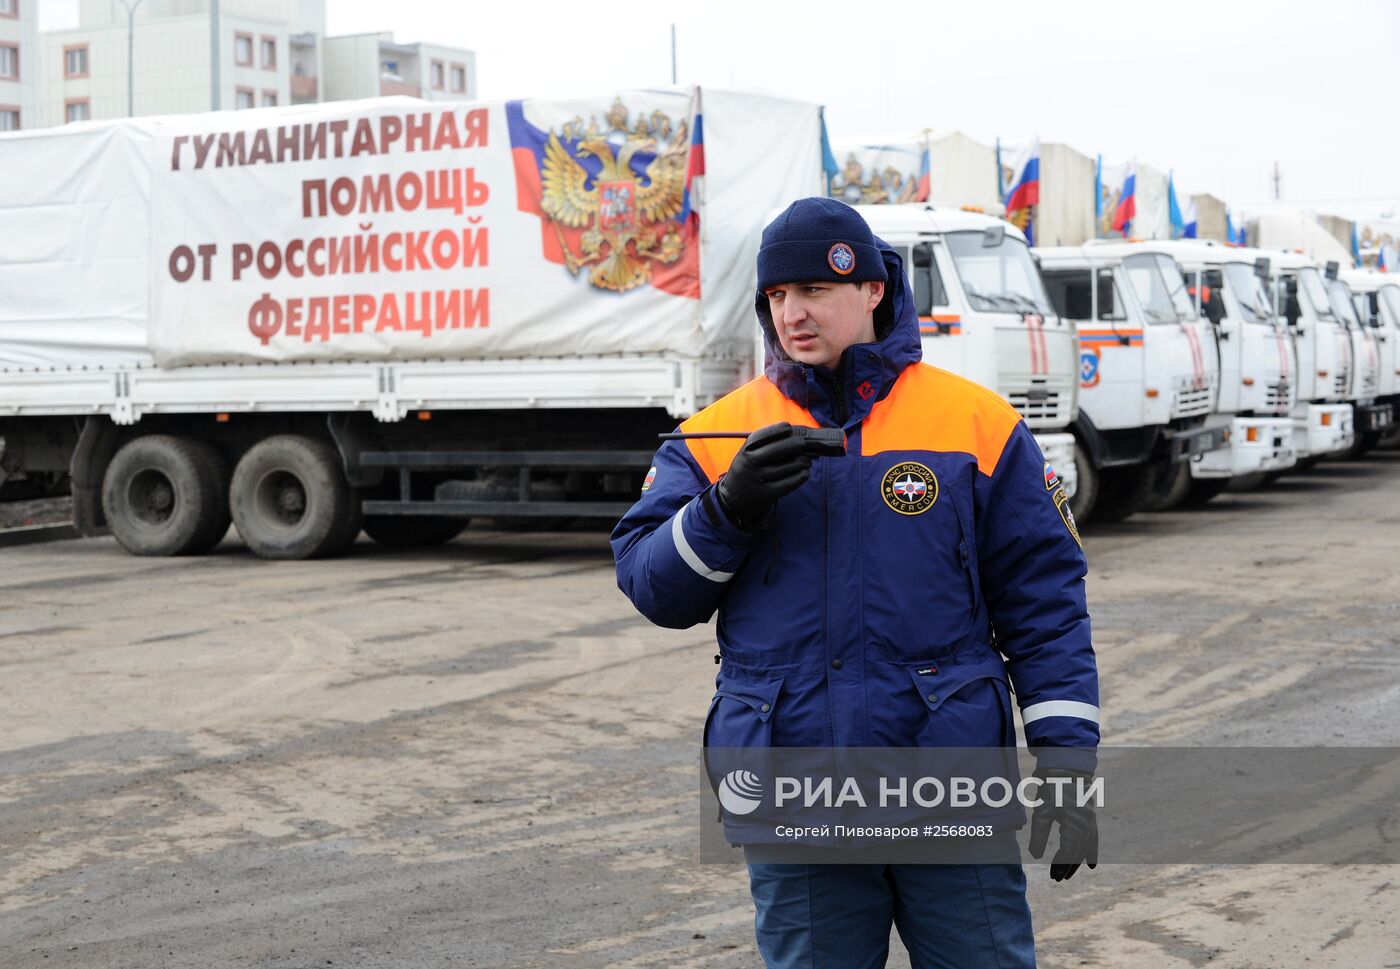 Тринадцатый гуманитарный конвой для юго-востока Украины в Ростовской области